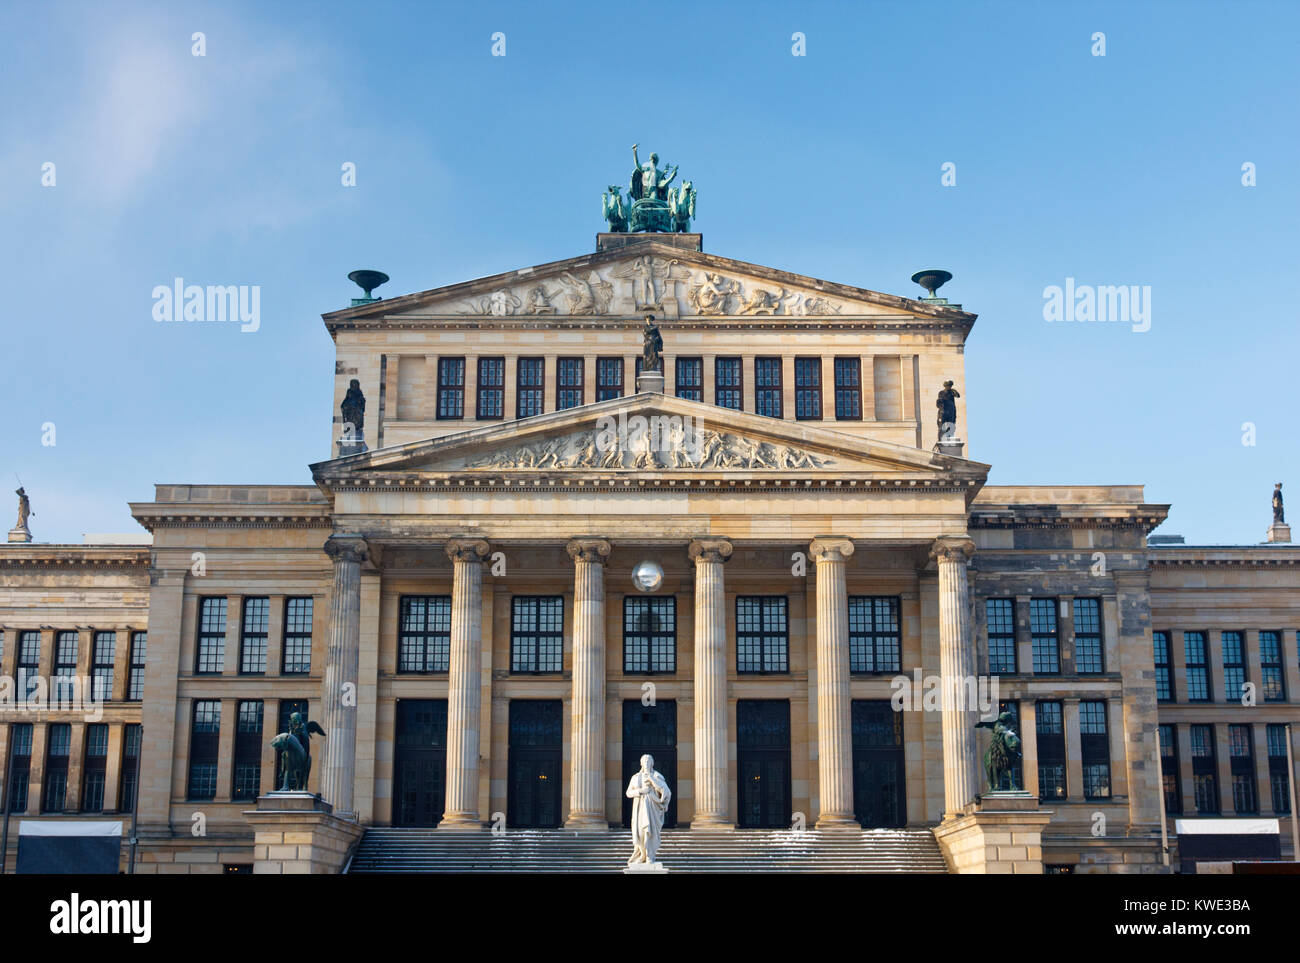 The Concert Hall in Berlin at Gendarmenmarkt. Stock Photo